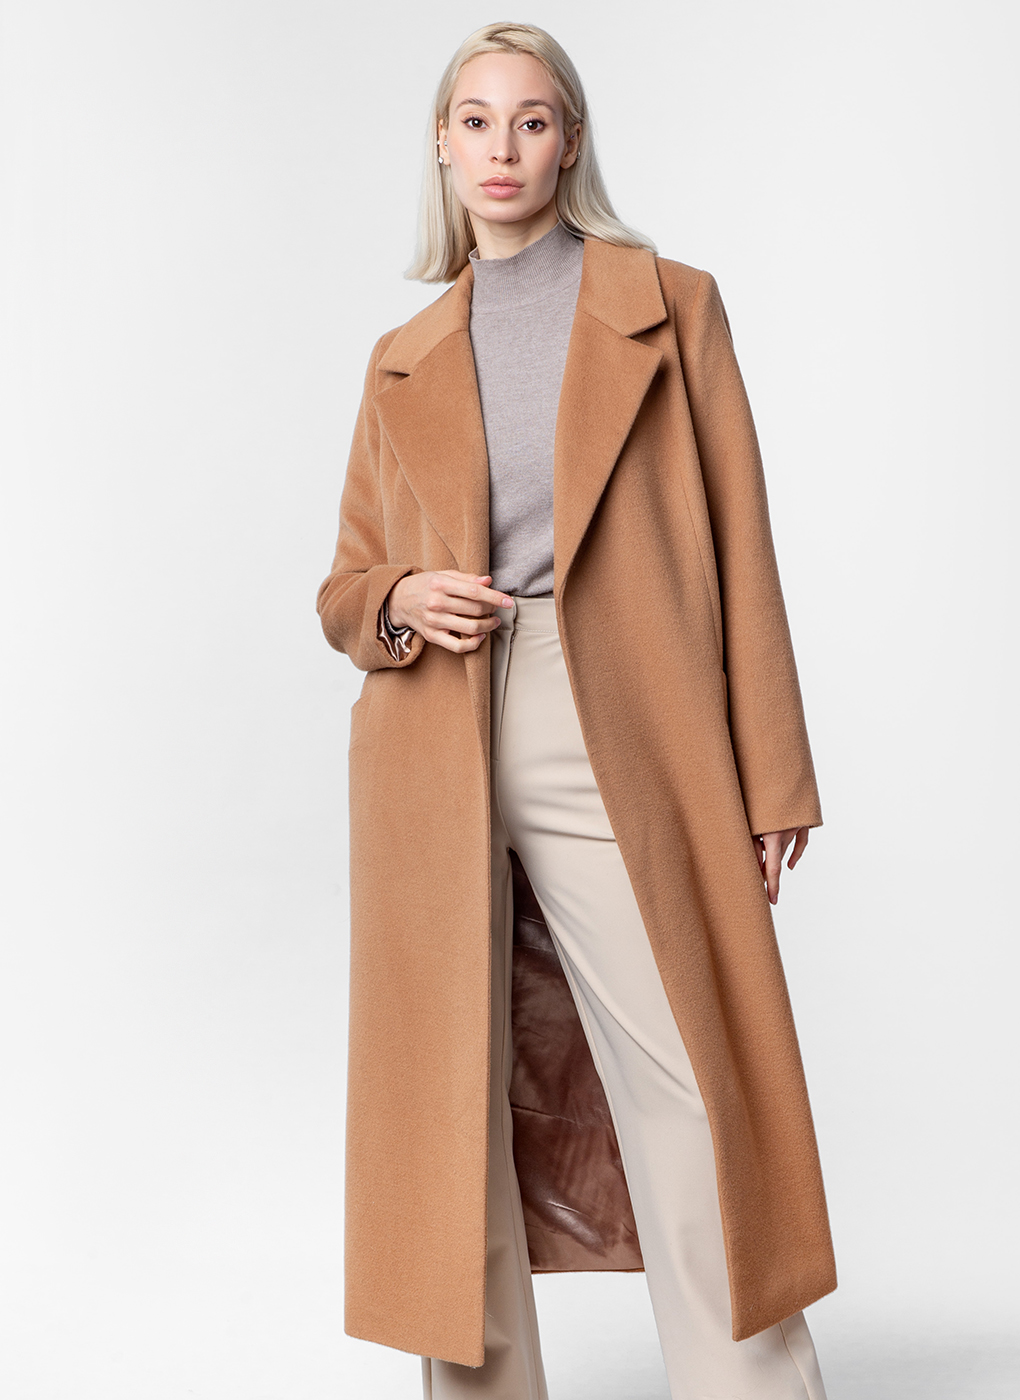 Пальто женское Каляев 59831 коричневое 42 RU